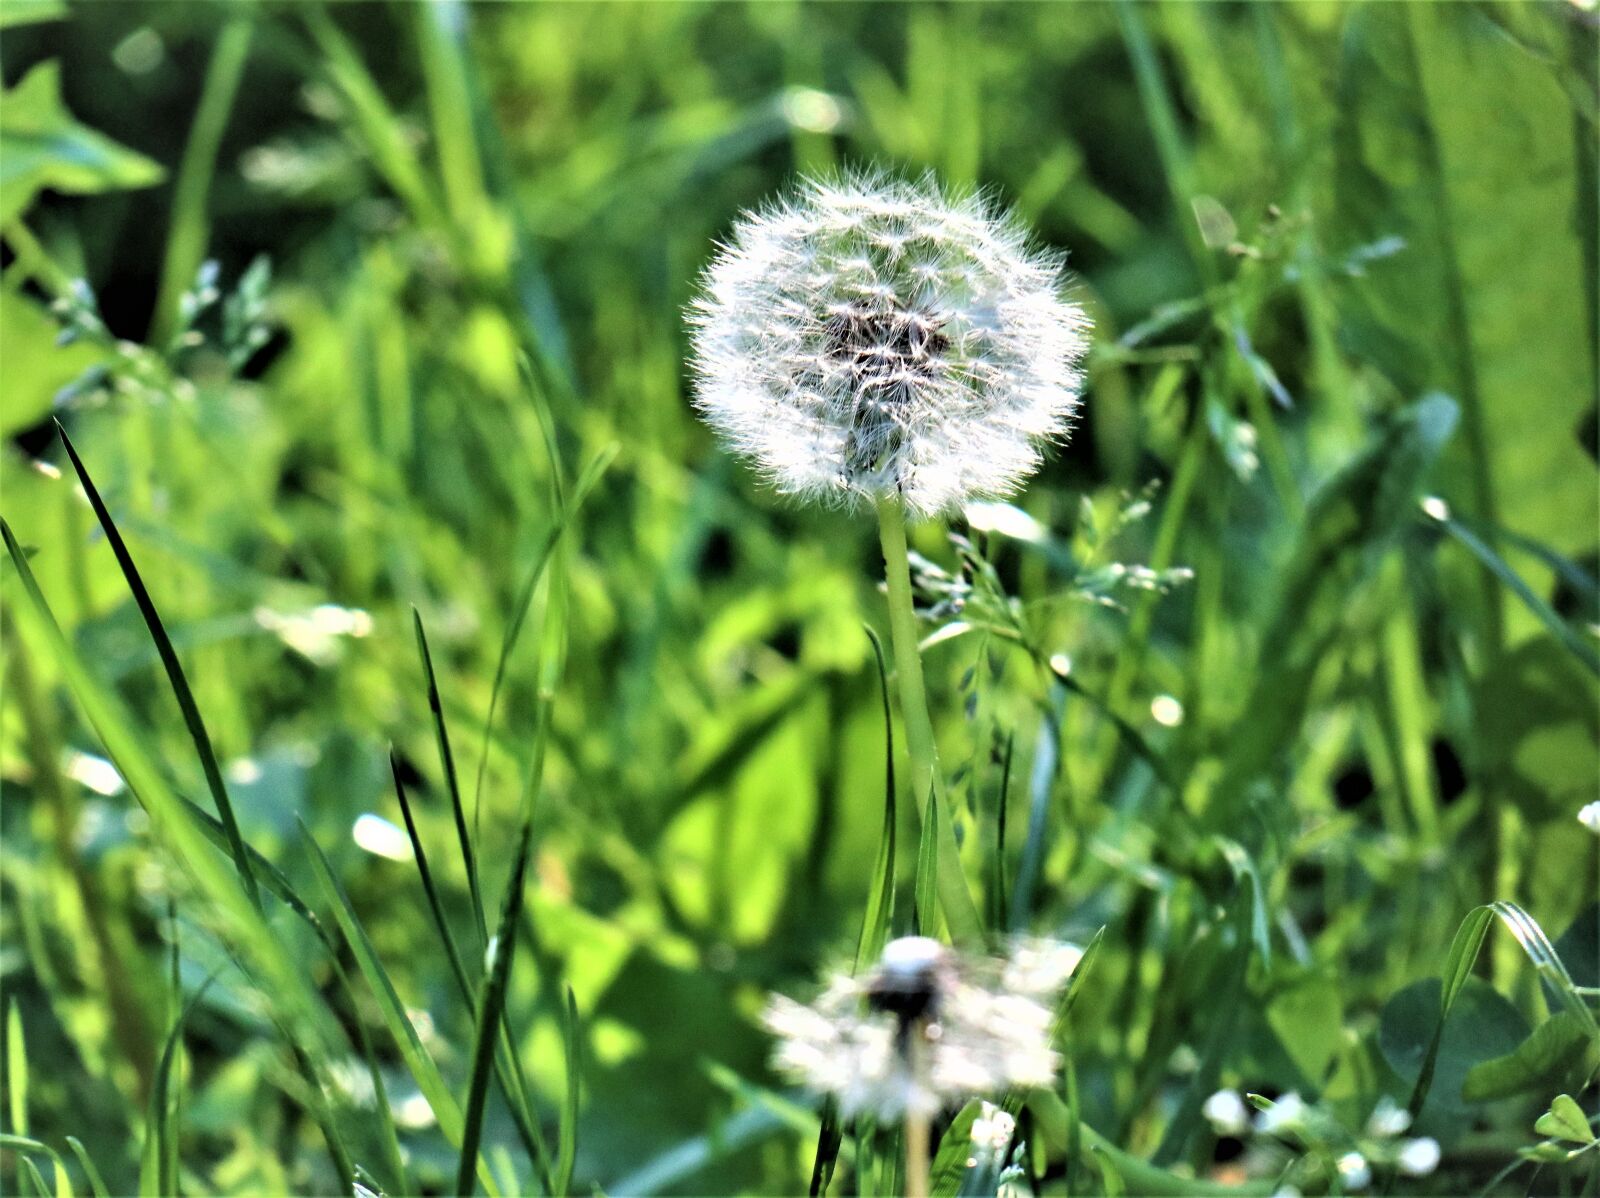 Canon EOS M6 sample photo. Grass, meadow, green photography